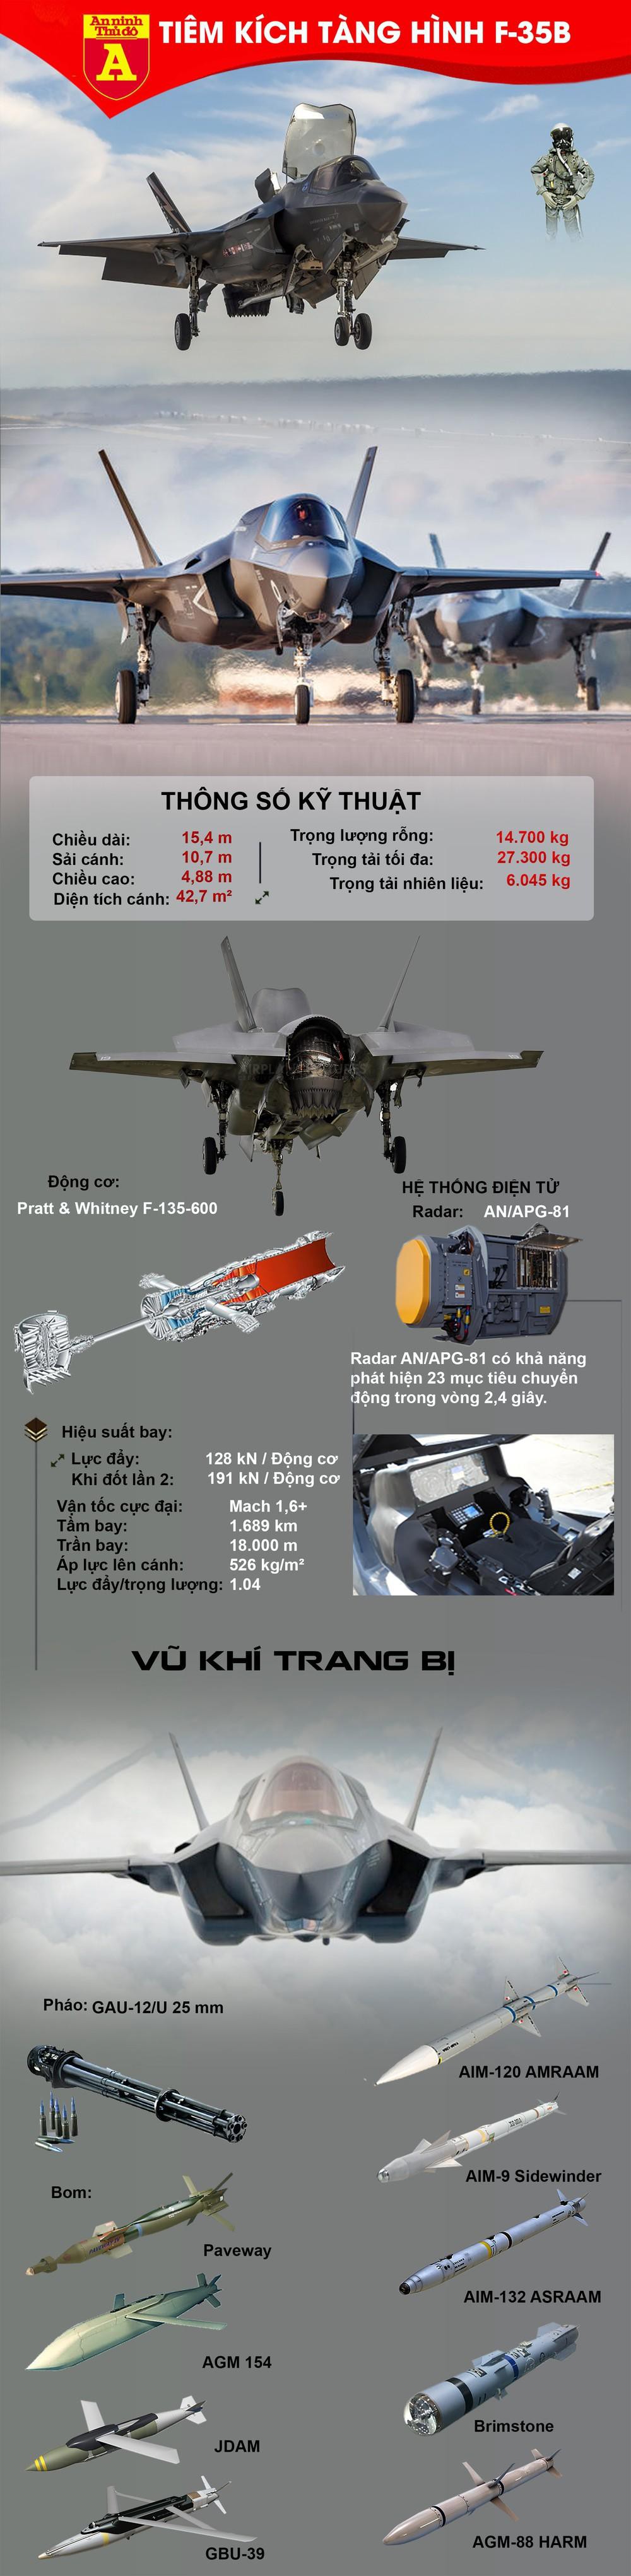 Khả năng tác chiến của tiêm kích tàng hình F-35B - Ảnh 1